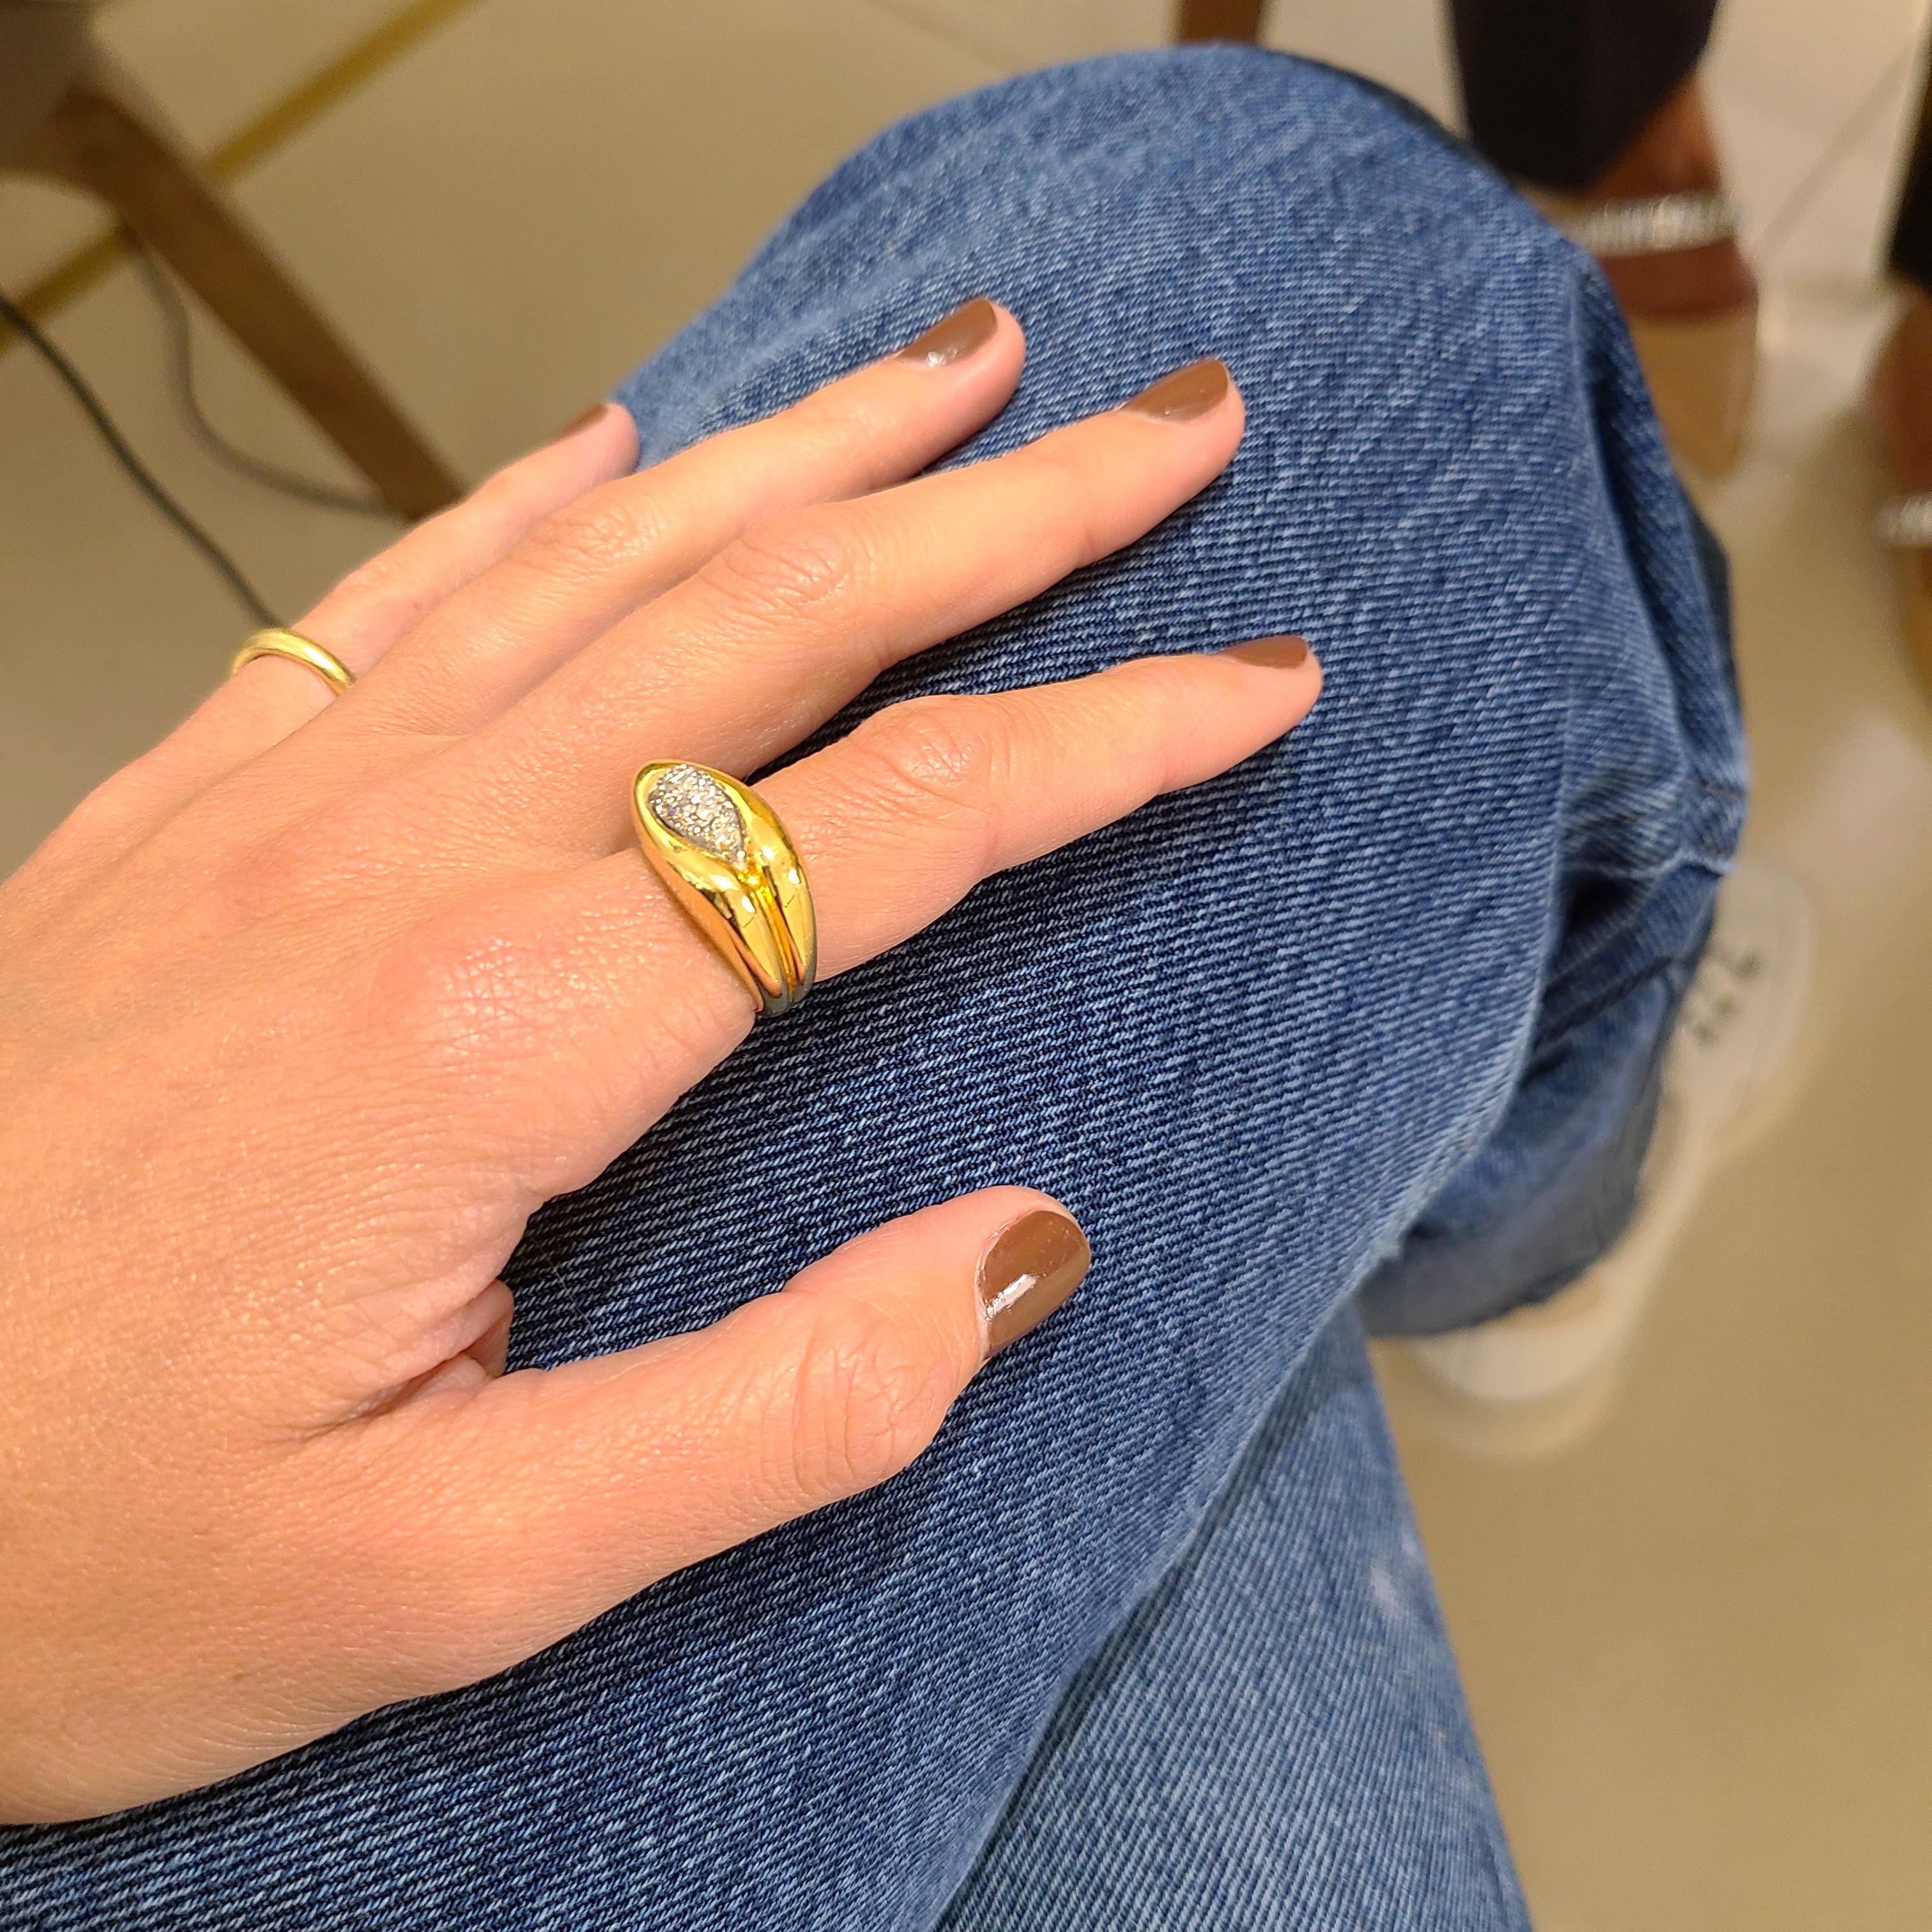 ring aus 18 Karat Gelbgold mit einem Diamanten in der Mitte.
Gewicht des Diamanten 0,29 Karat
Ring Größe 5 1/2  größenoptionen können verfügbar sein